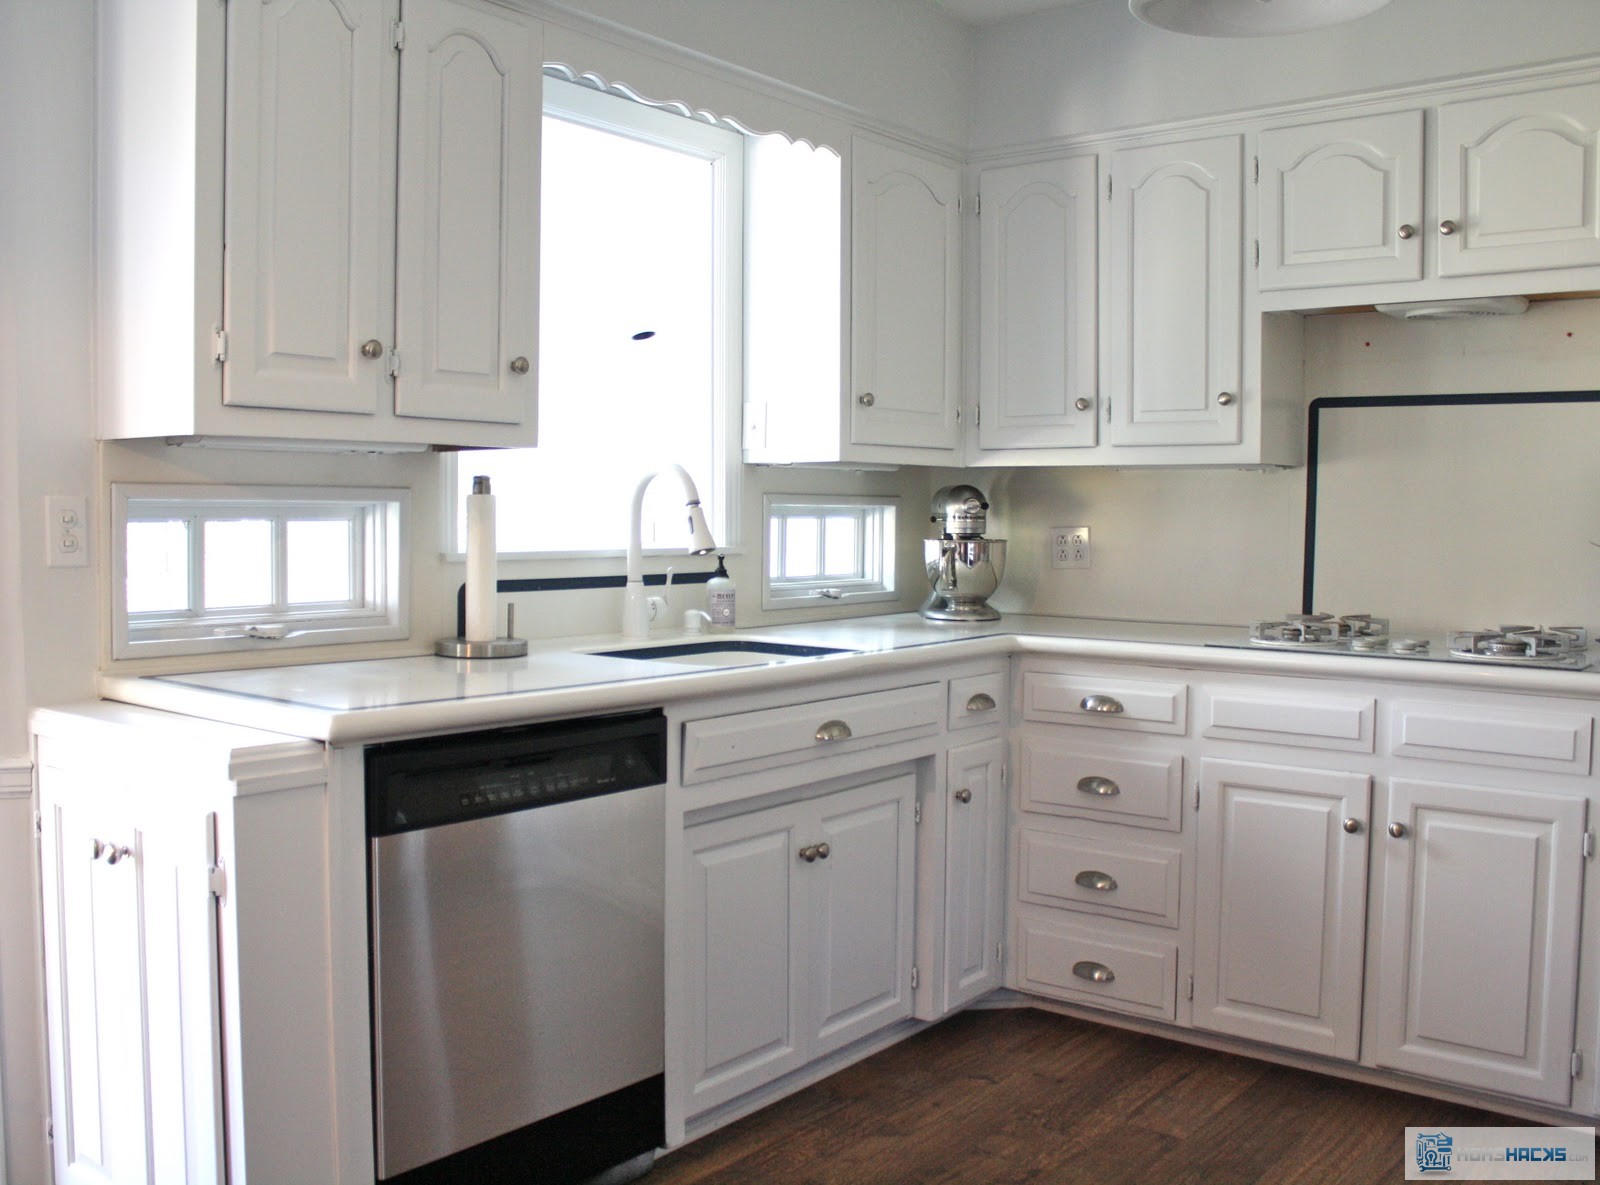 https://www.homehacks.com/wp-content/uploads/2014/01/stainless-kitchen-remodel.jpg